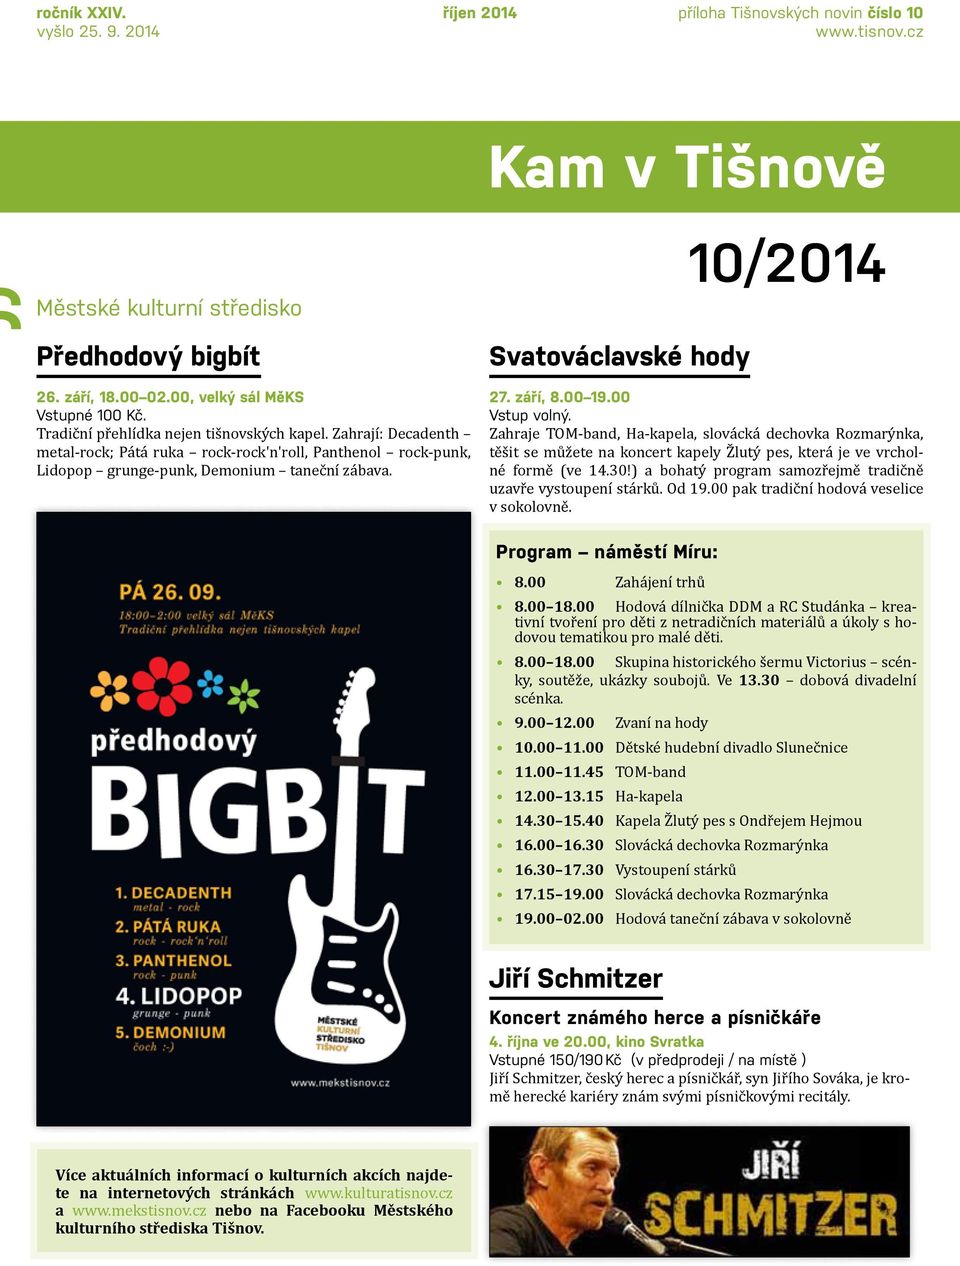 Kam v Tišnově Svatováclavské hody 10/2014 27. září, 8.00 19.00 Vstup volný.